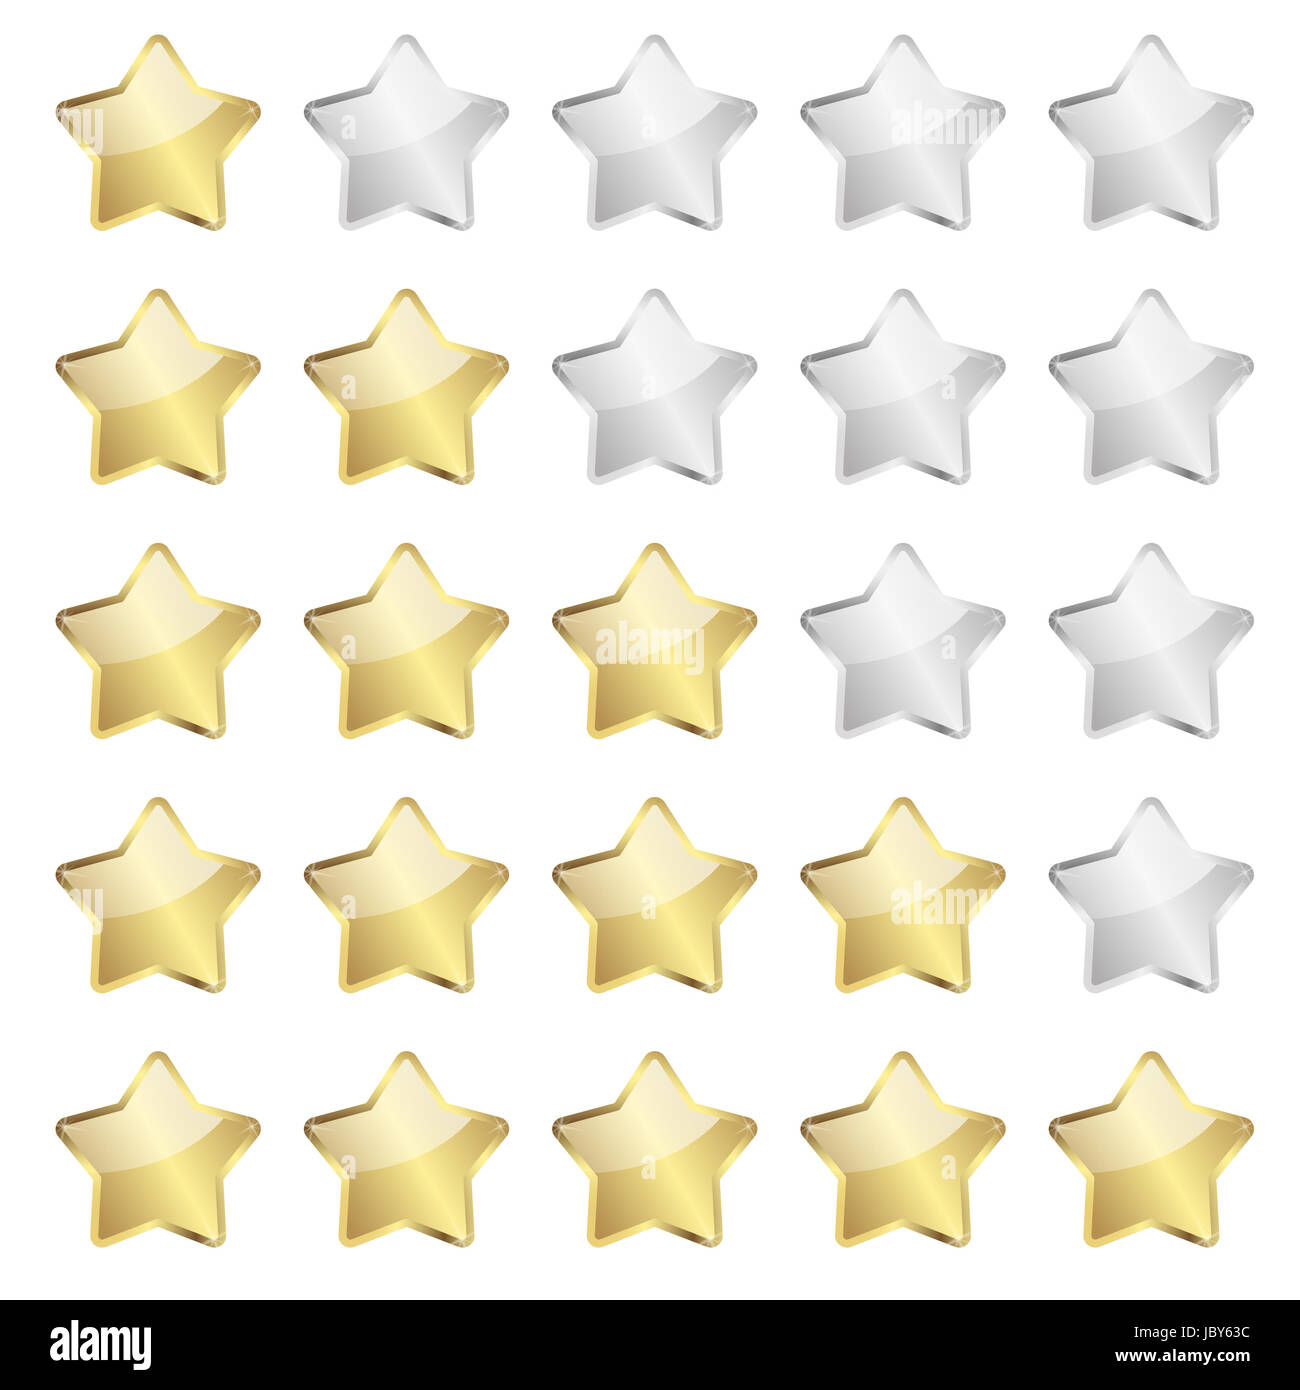 Vecteur d'examen d'évaluation des étoiles d'or Banque D'Images